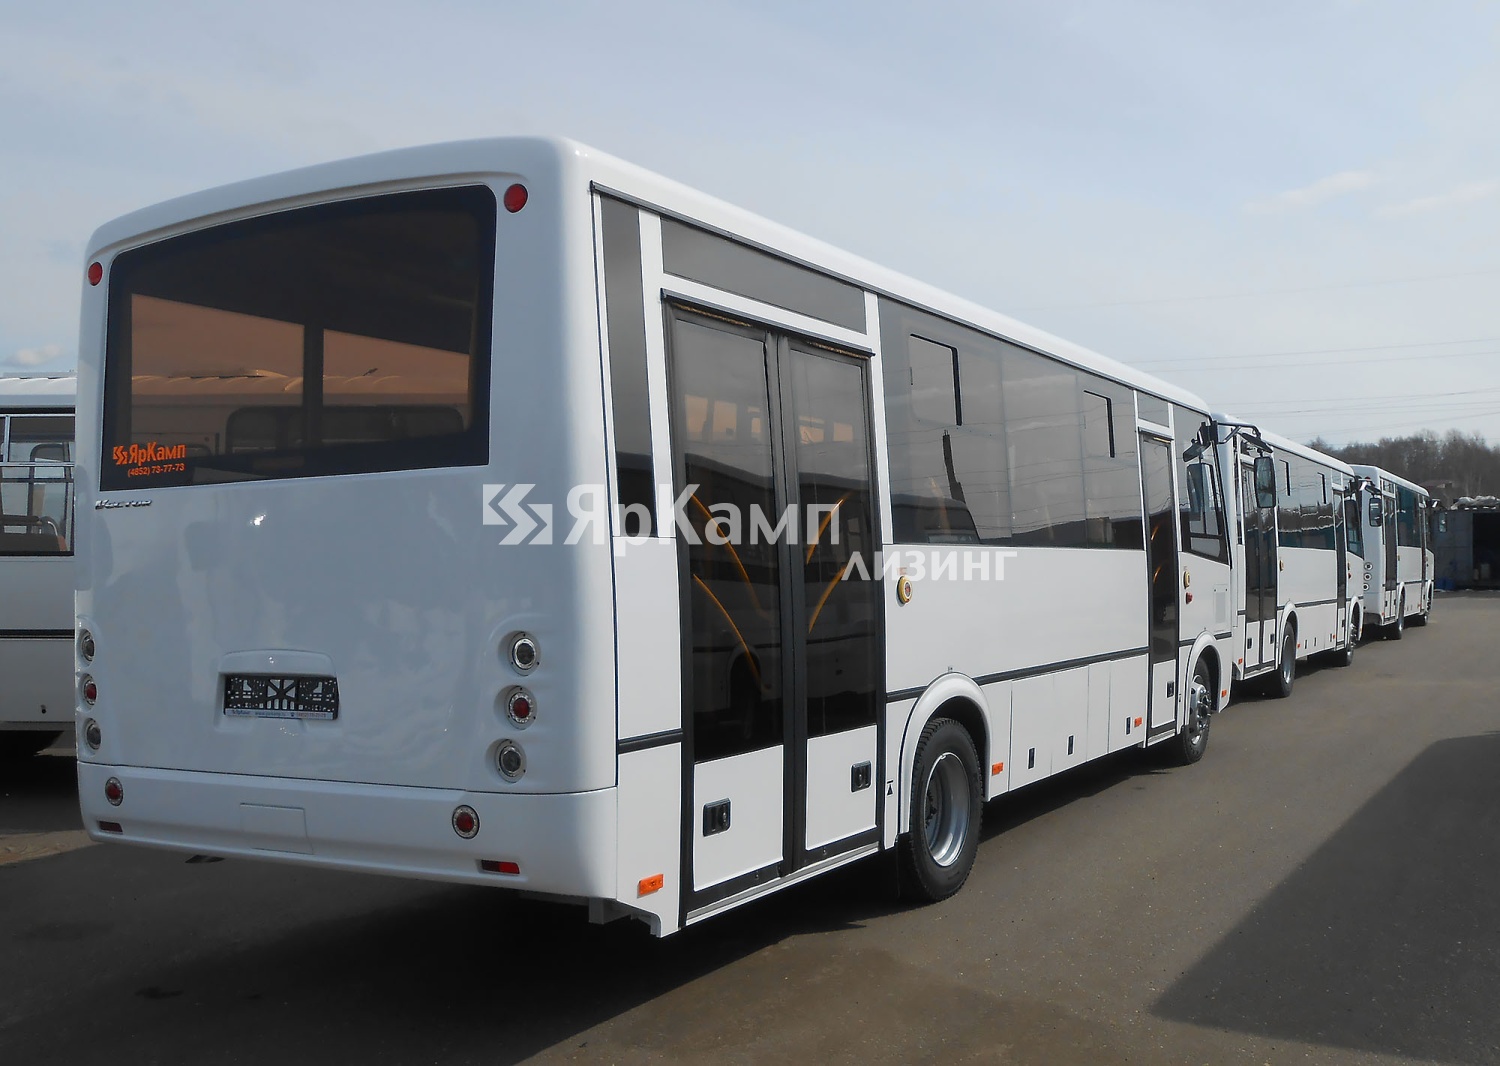 8 автобусов ПАЗ 320414-05 переданы на условиях финансовой аренды